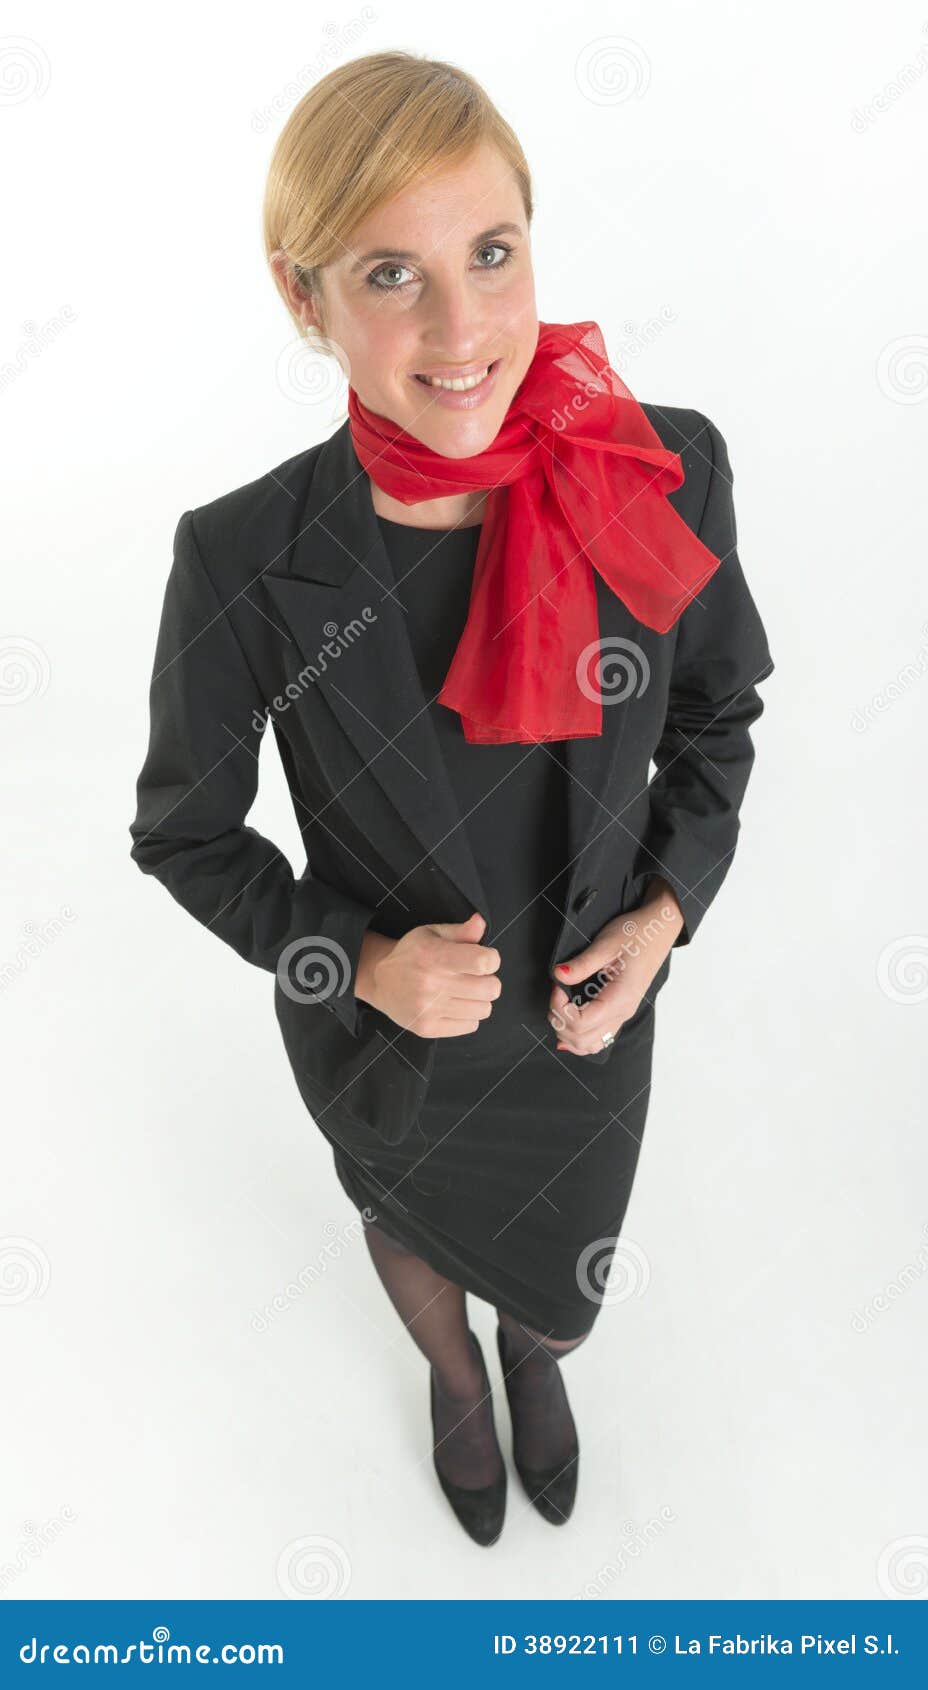 vestido preto com lenço vermelho